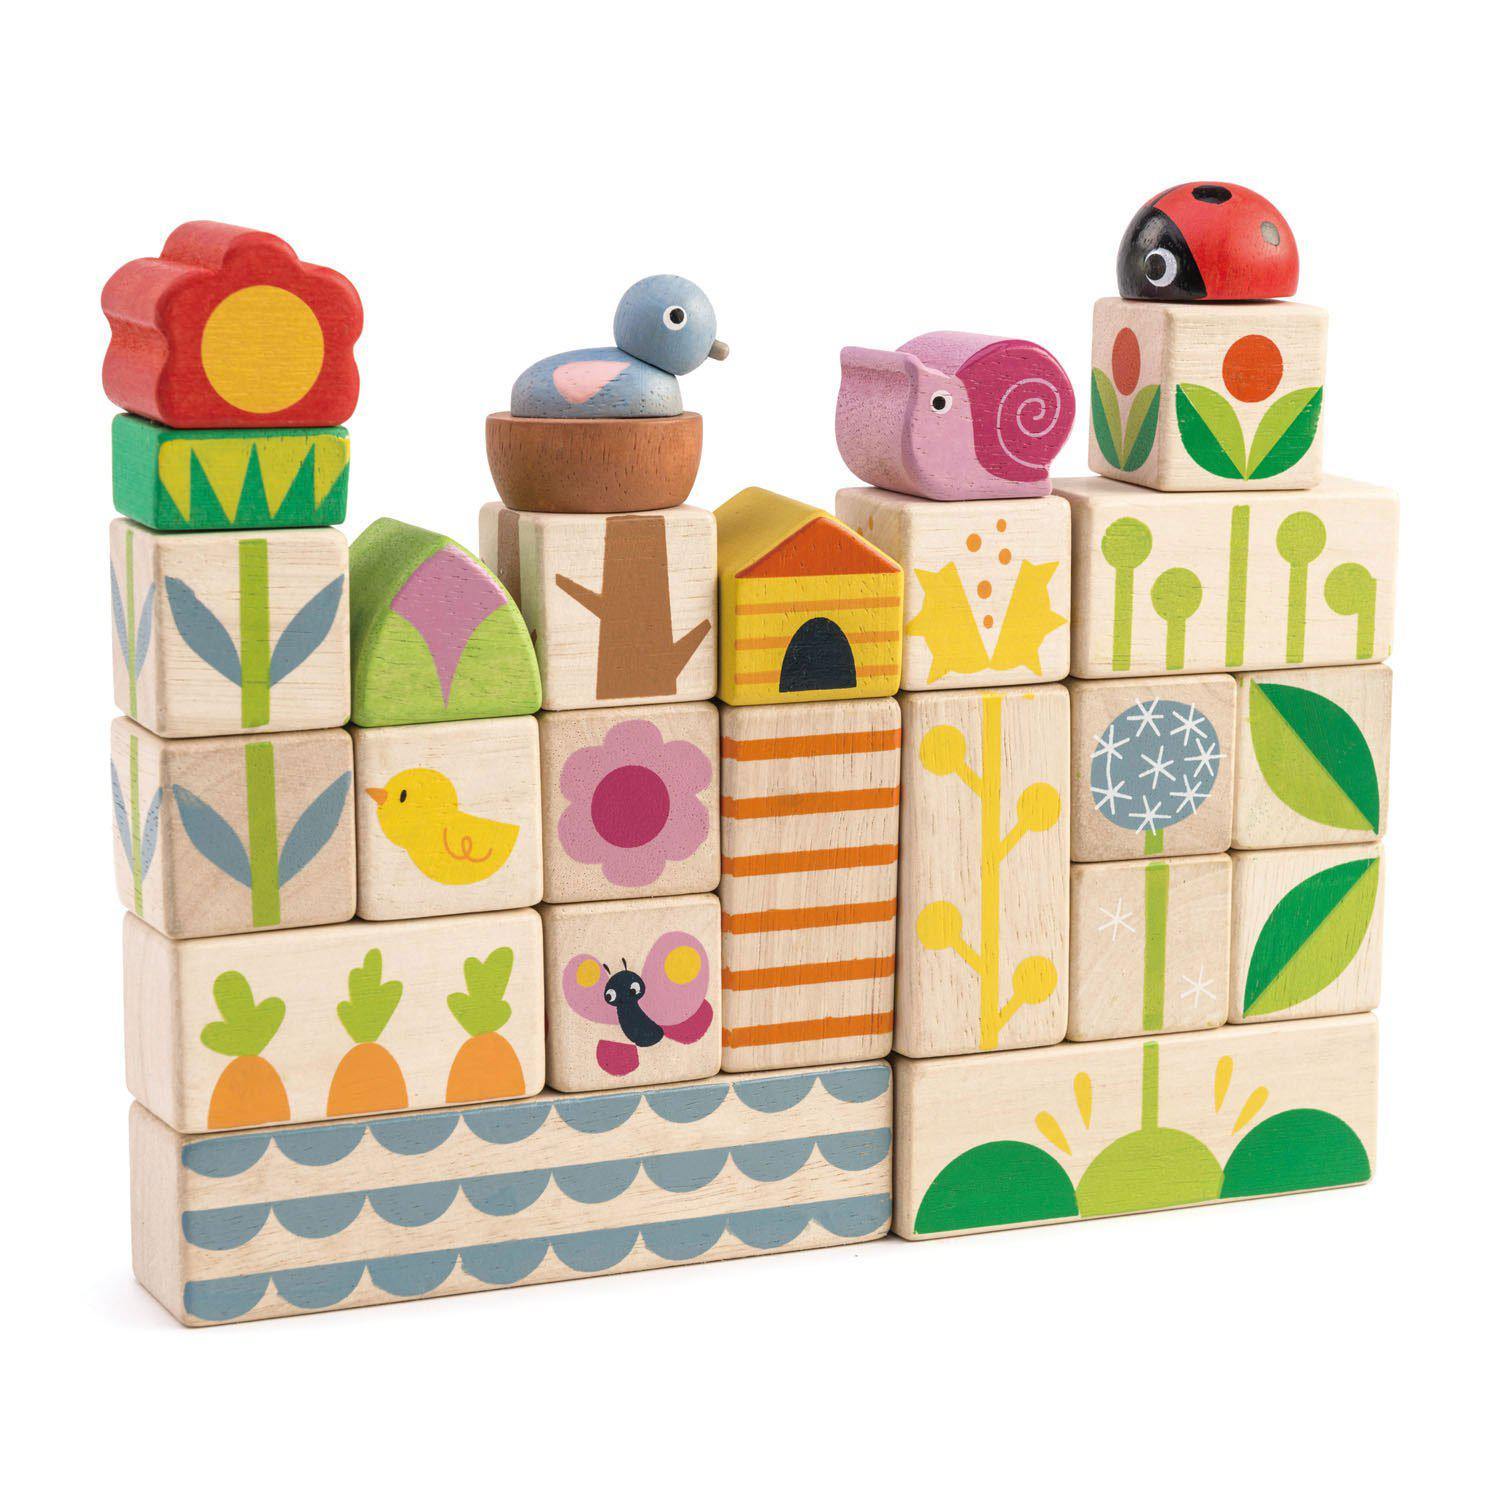 Felpakolható kerti illusztrációs kockák, prémium minőségű fából - Garden Blocks - 24 darab - Tender Leaf Toys-Tender Leaf Toys-4-Játszma.ro - A maradandó élmények boltja